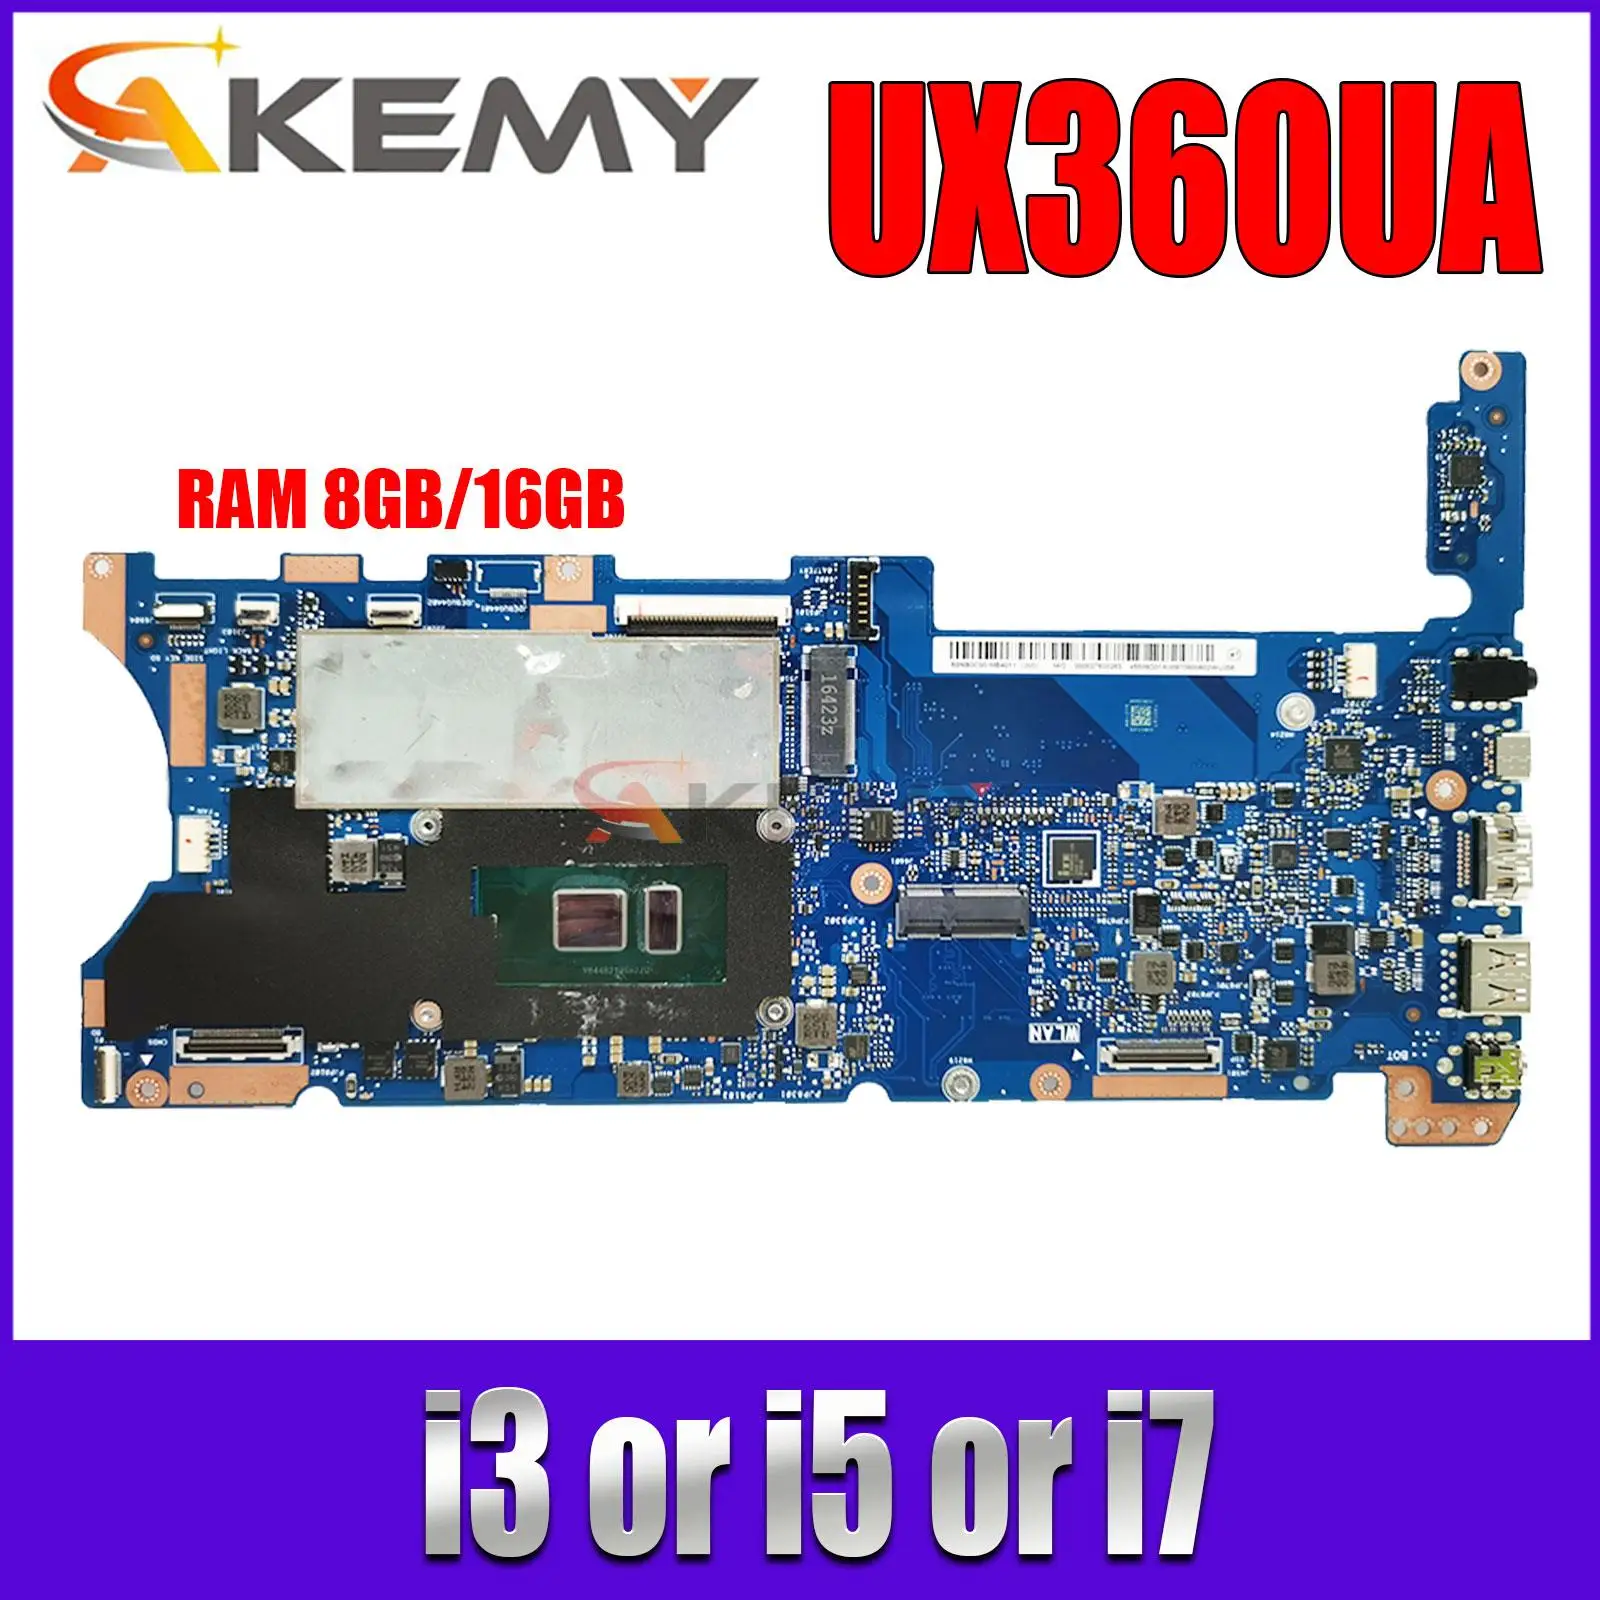 

UX360UA Mainboard For ASUS ZenBook Flip UX360UAK UX360U UX360 TP360UA Laptop Motherboard I3 I5 I7 6th/7th Gen 8GB/16GB-RAM